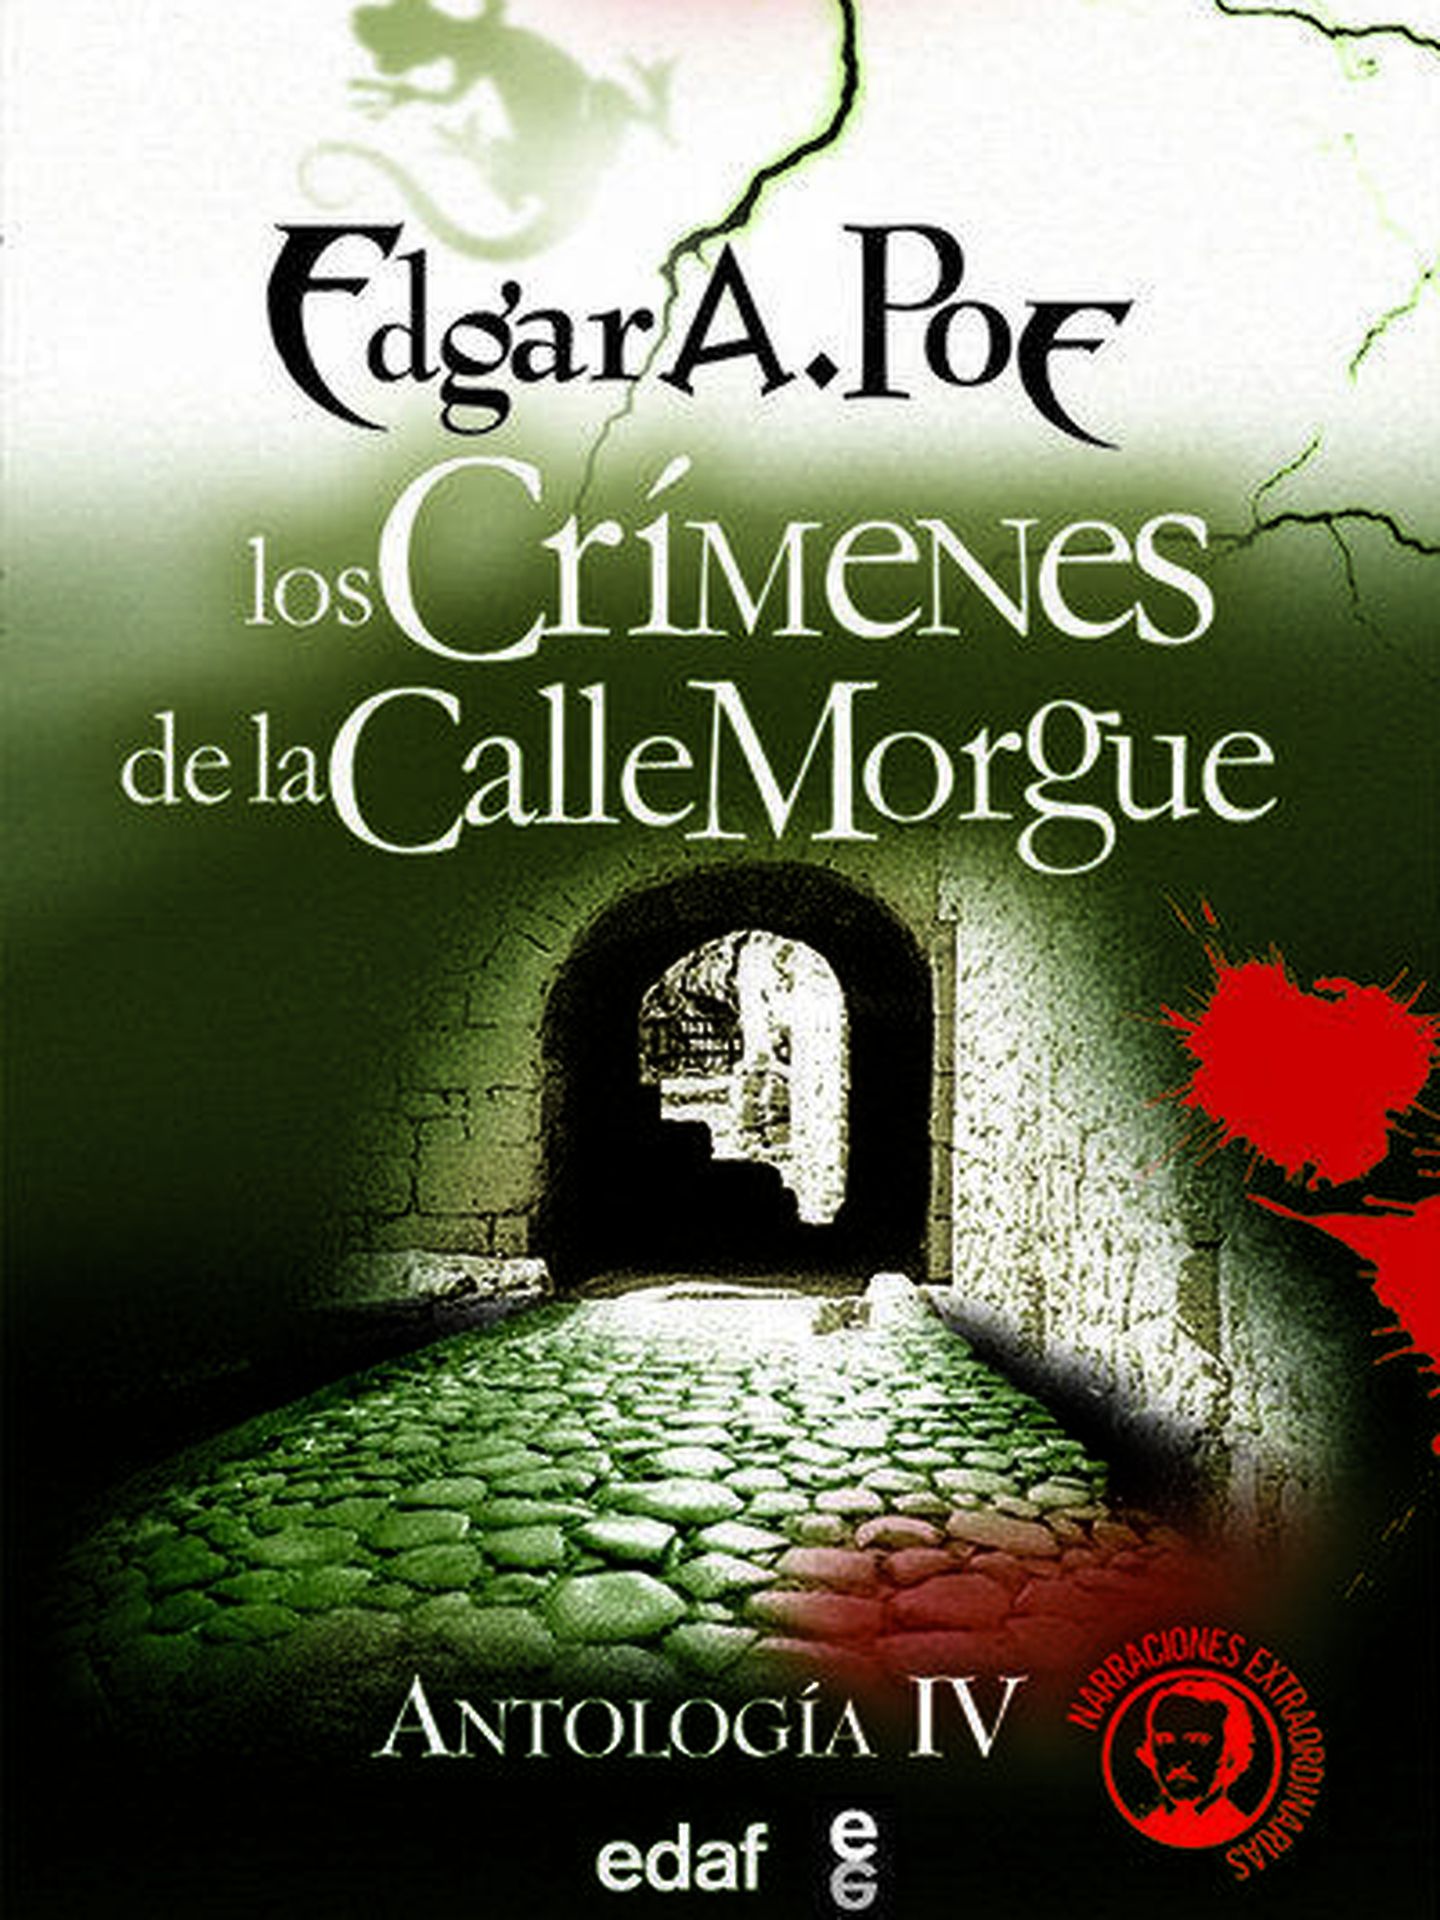 'Los crímenes de la calle Morgue', de Edgar Allan Poe.